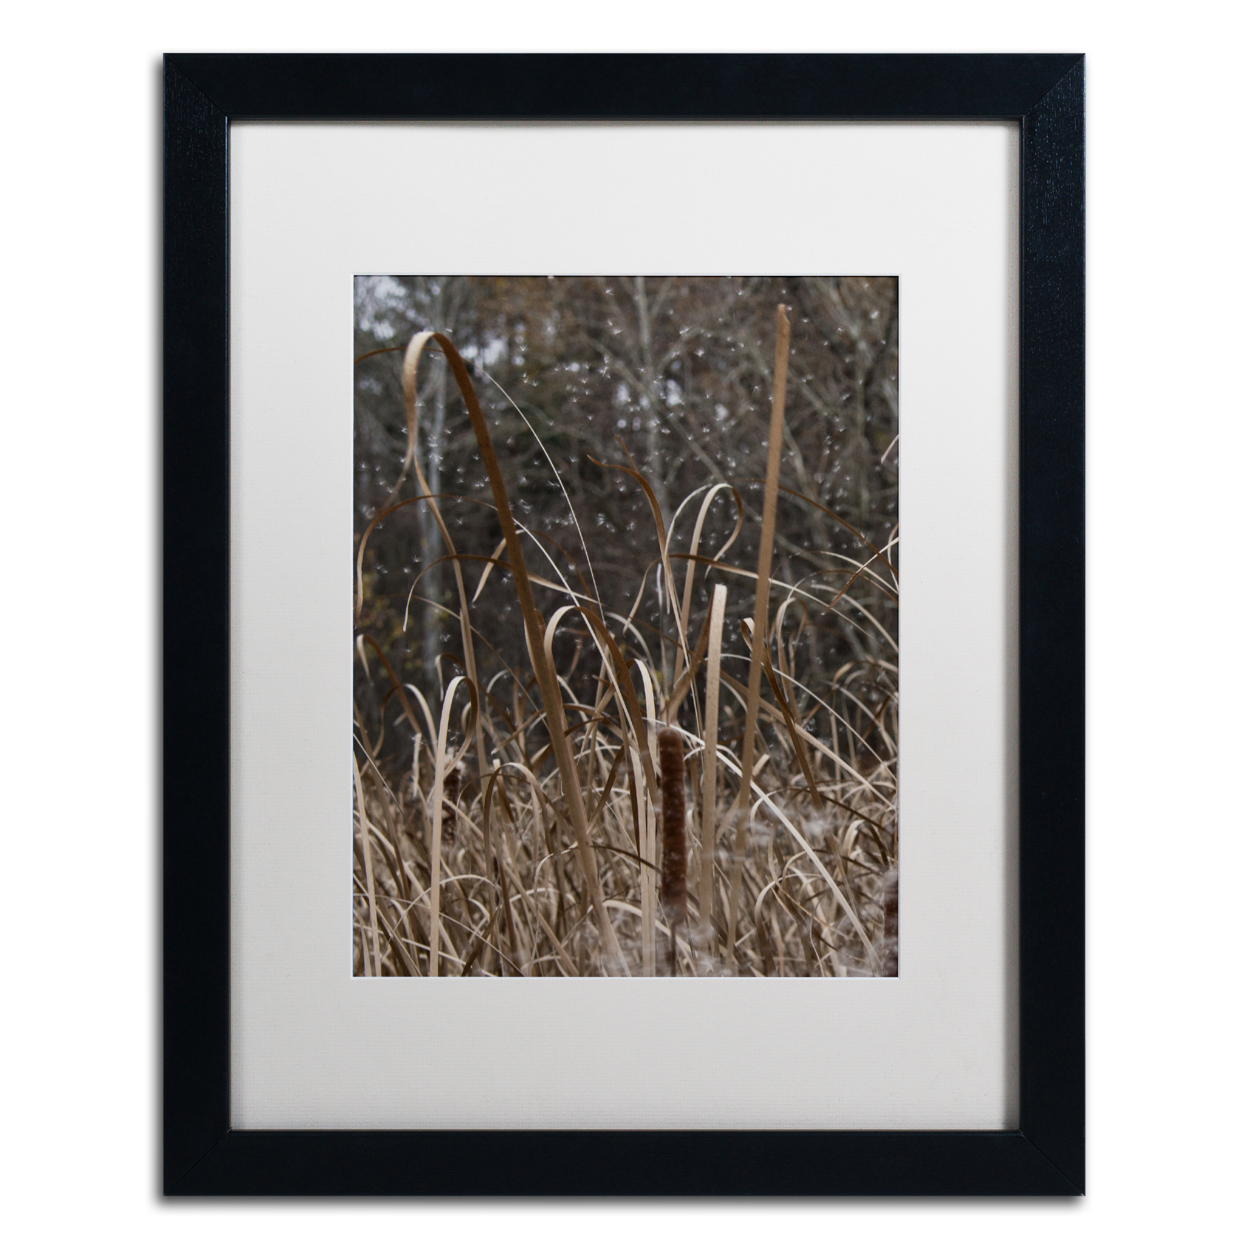 Kurt Shaffer 'Cattail Seeds In Flight' Black Wooden Framed Art 18 X 22 Inches